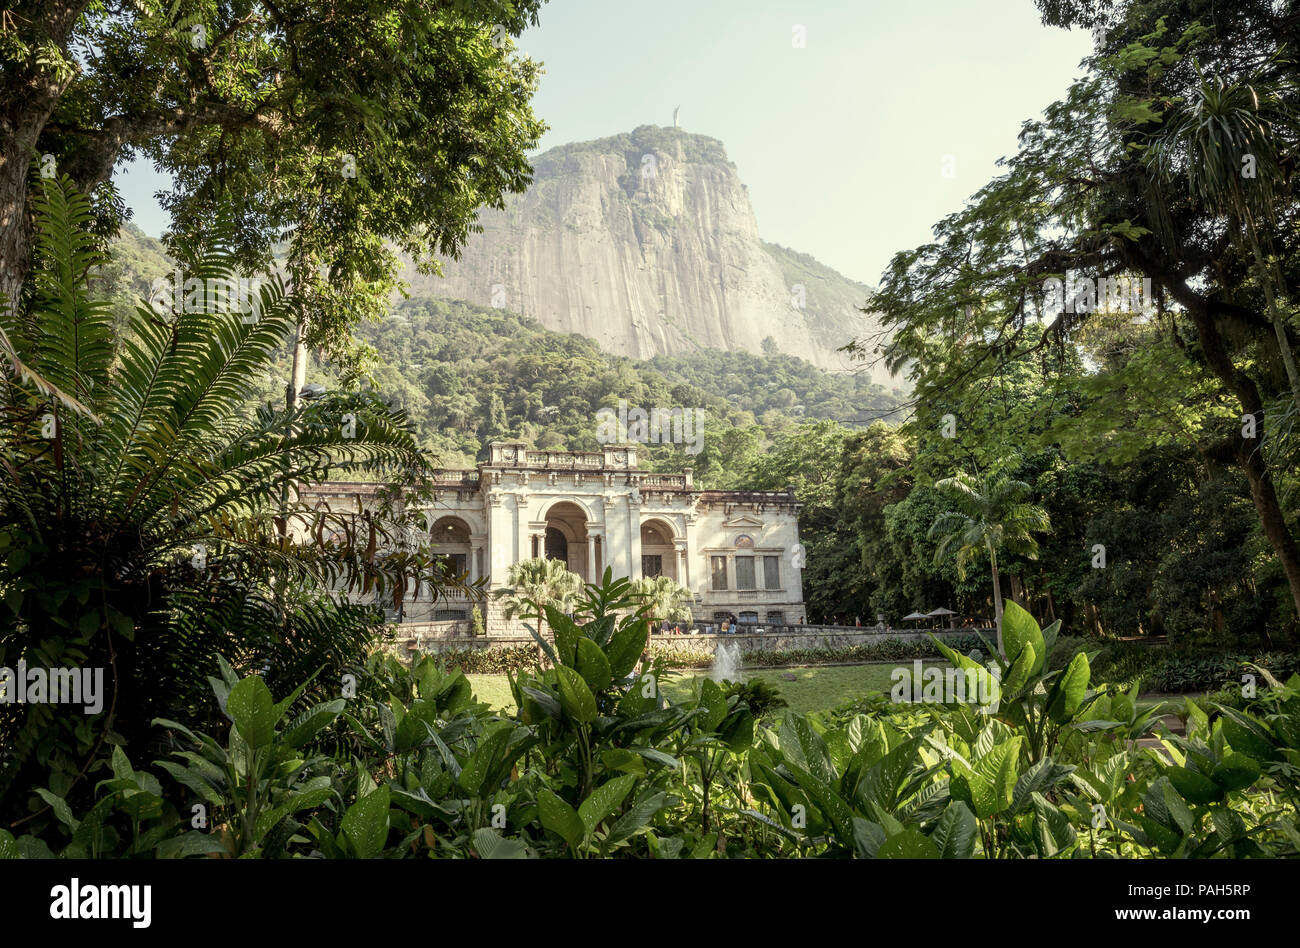 Rio de Janeiro, Brazil - December 16, 2017: Visual Arts School of Parque Enrique Lage in Rio de Janeiro, Brazil Stock Photo